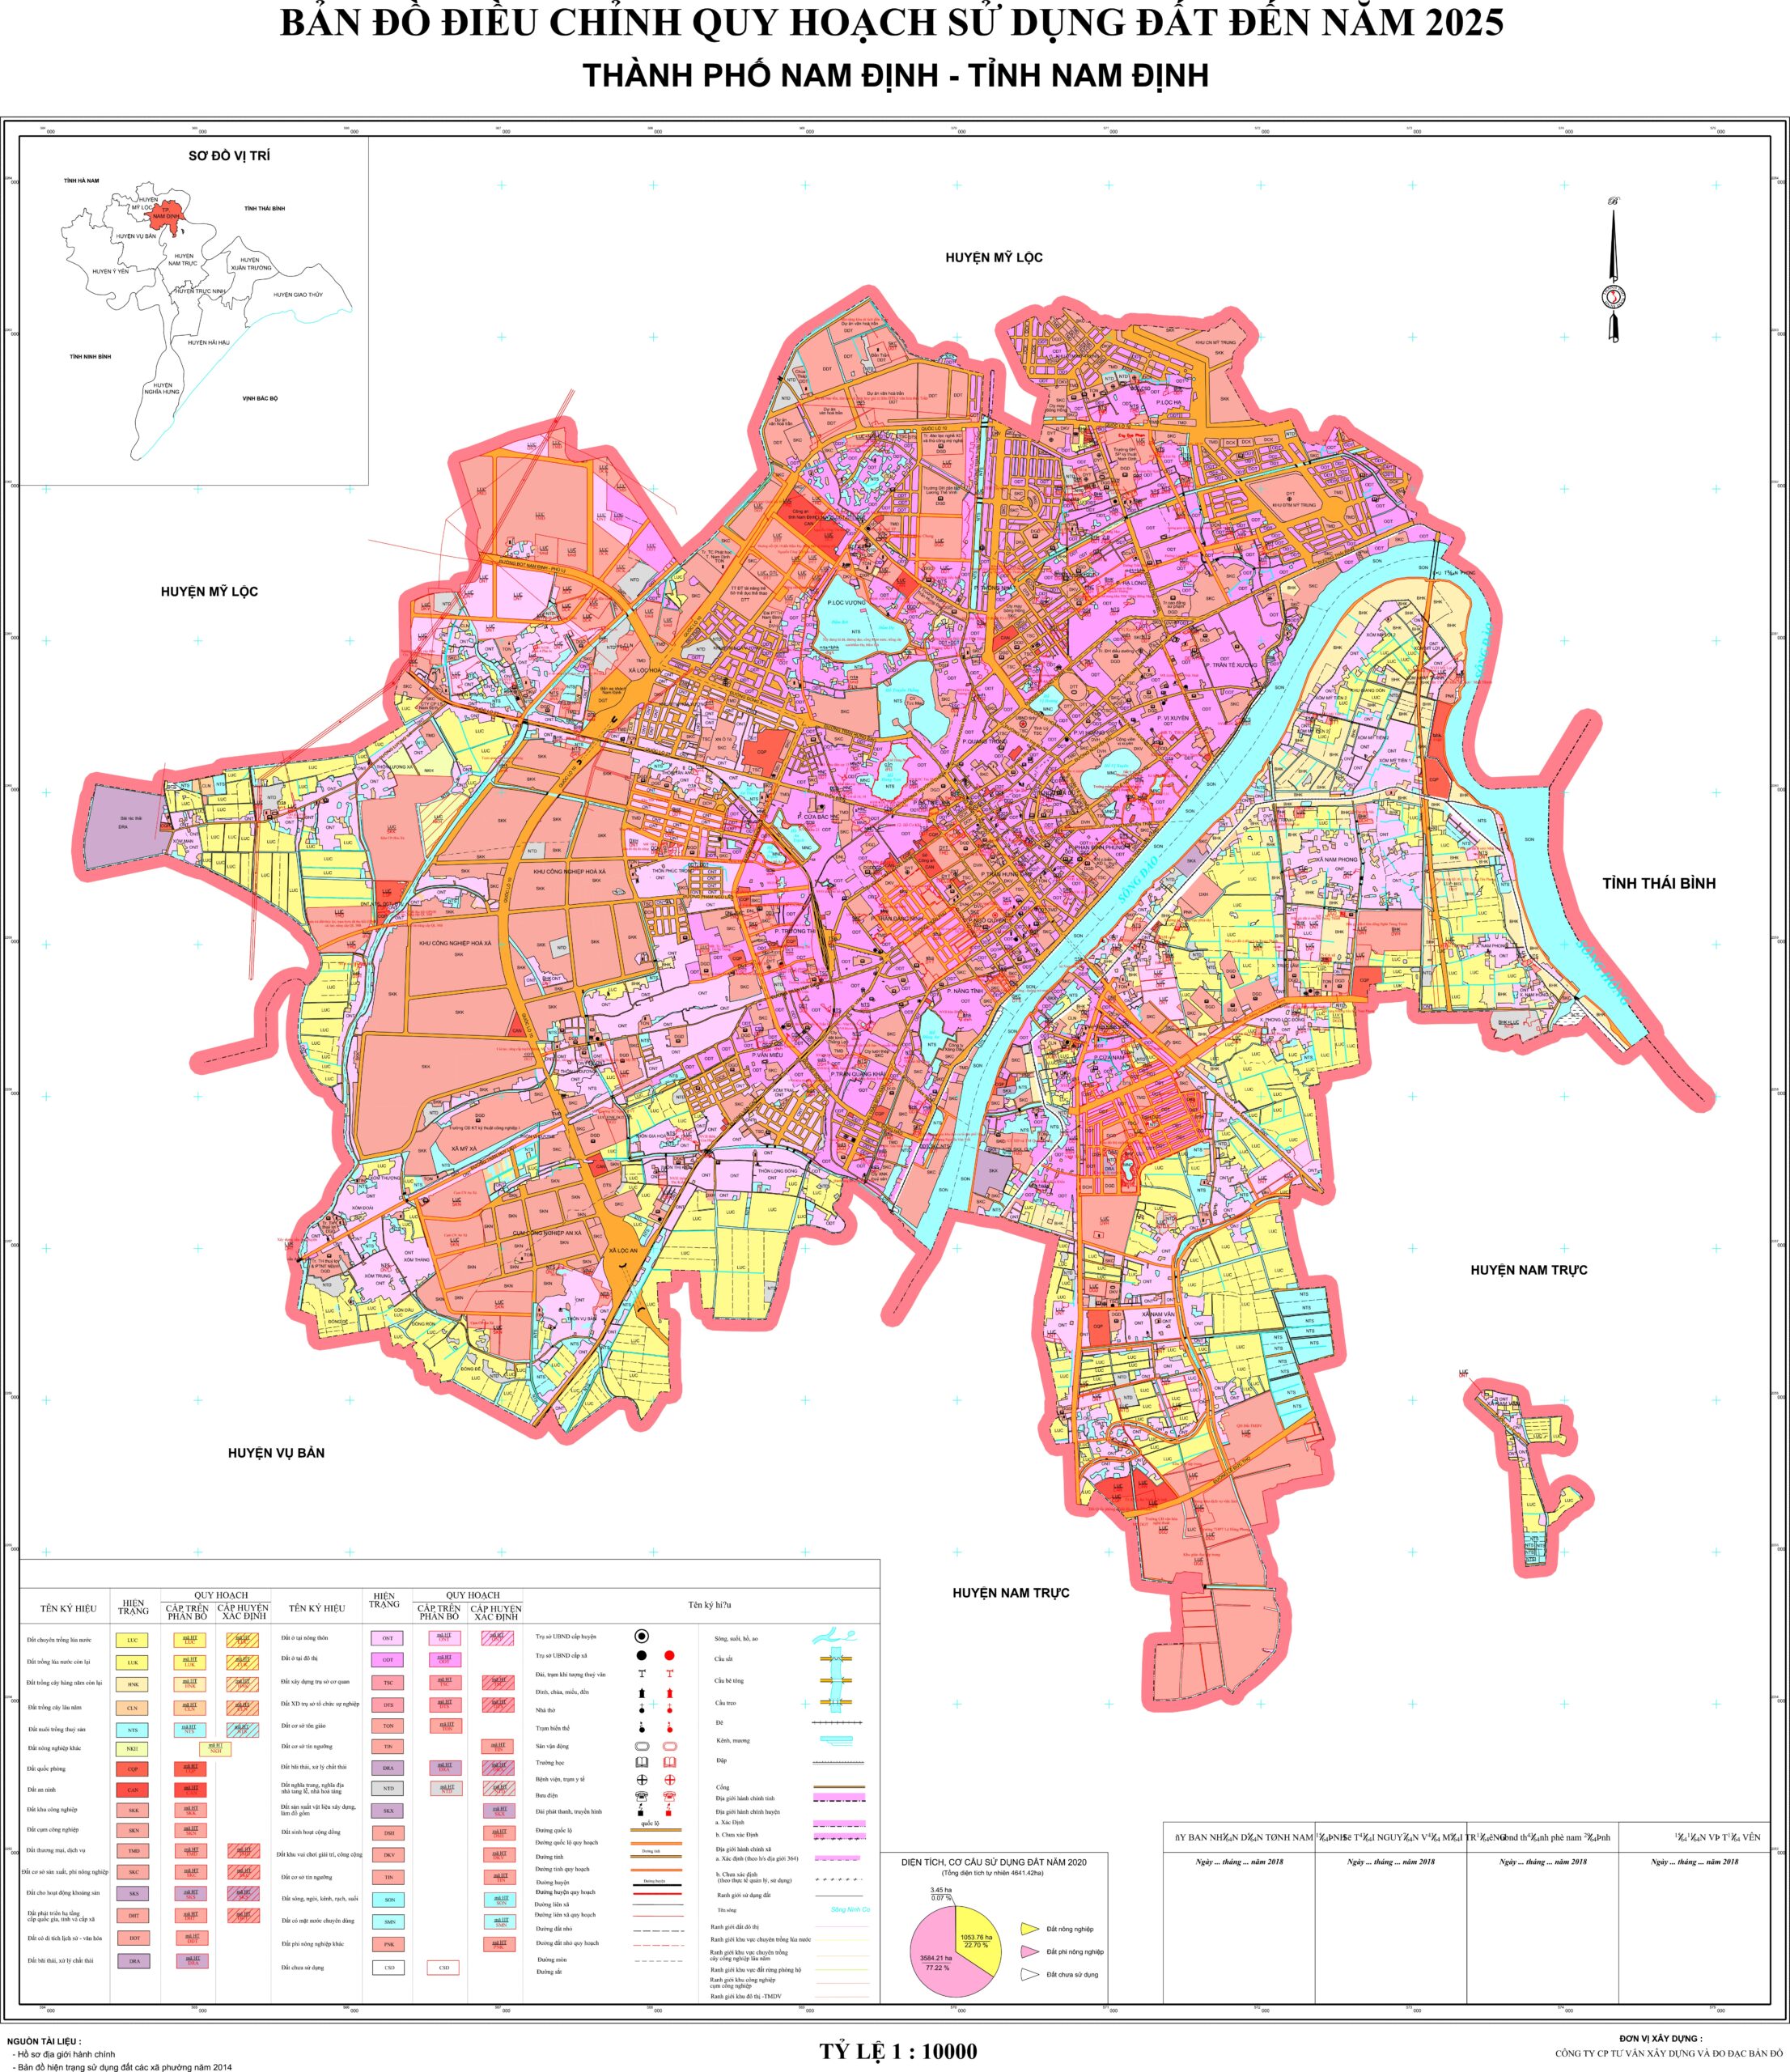 Thông tin về quy hoạch mới nhất của thành phố Nam Định được công bố, với sự khởi động những dự án đầy tiềm năng. Điều đó đánh chứng cho sự nỗ lực của thành phố trong việc phát triển kinh tế và xã hội. Hãy cùng tham khảo hình ảnh liên quan để hiểu rõ hơn về những sự thay đổi này.